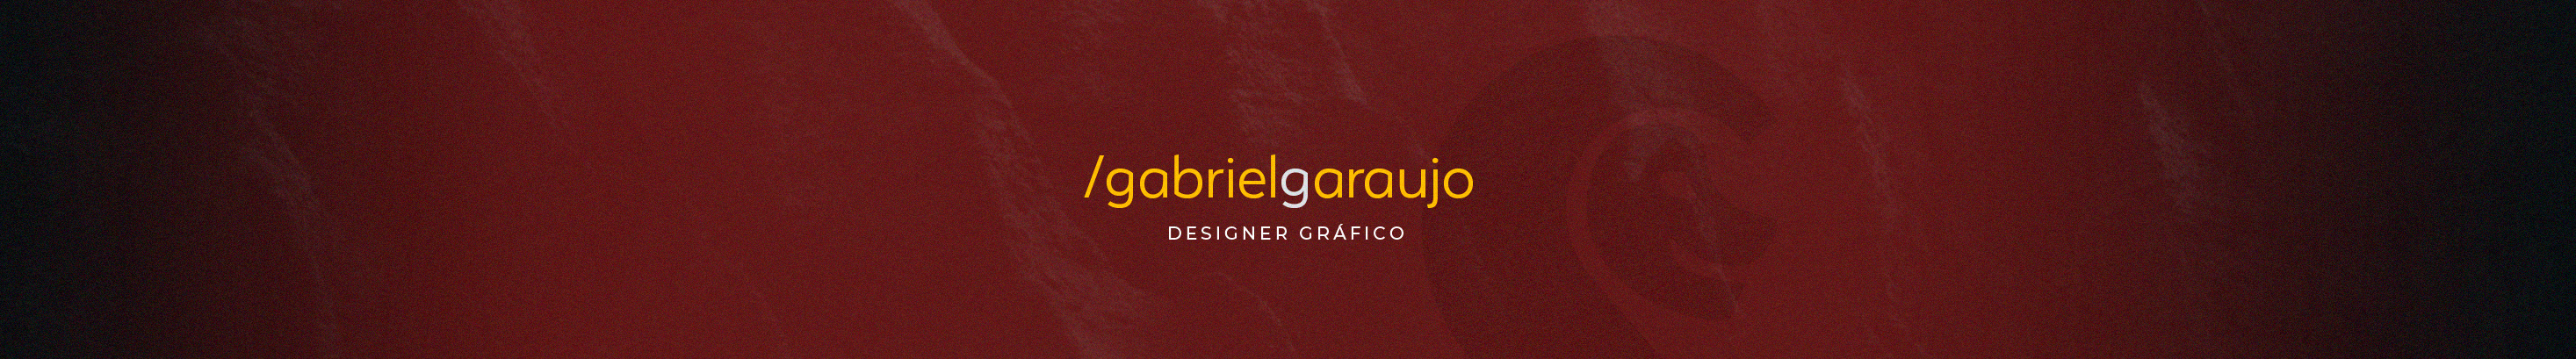 Gabriel Gonçalves's profile banner